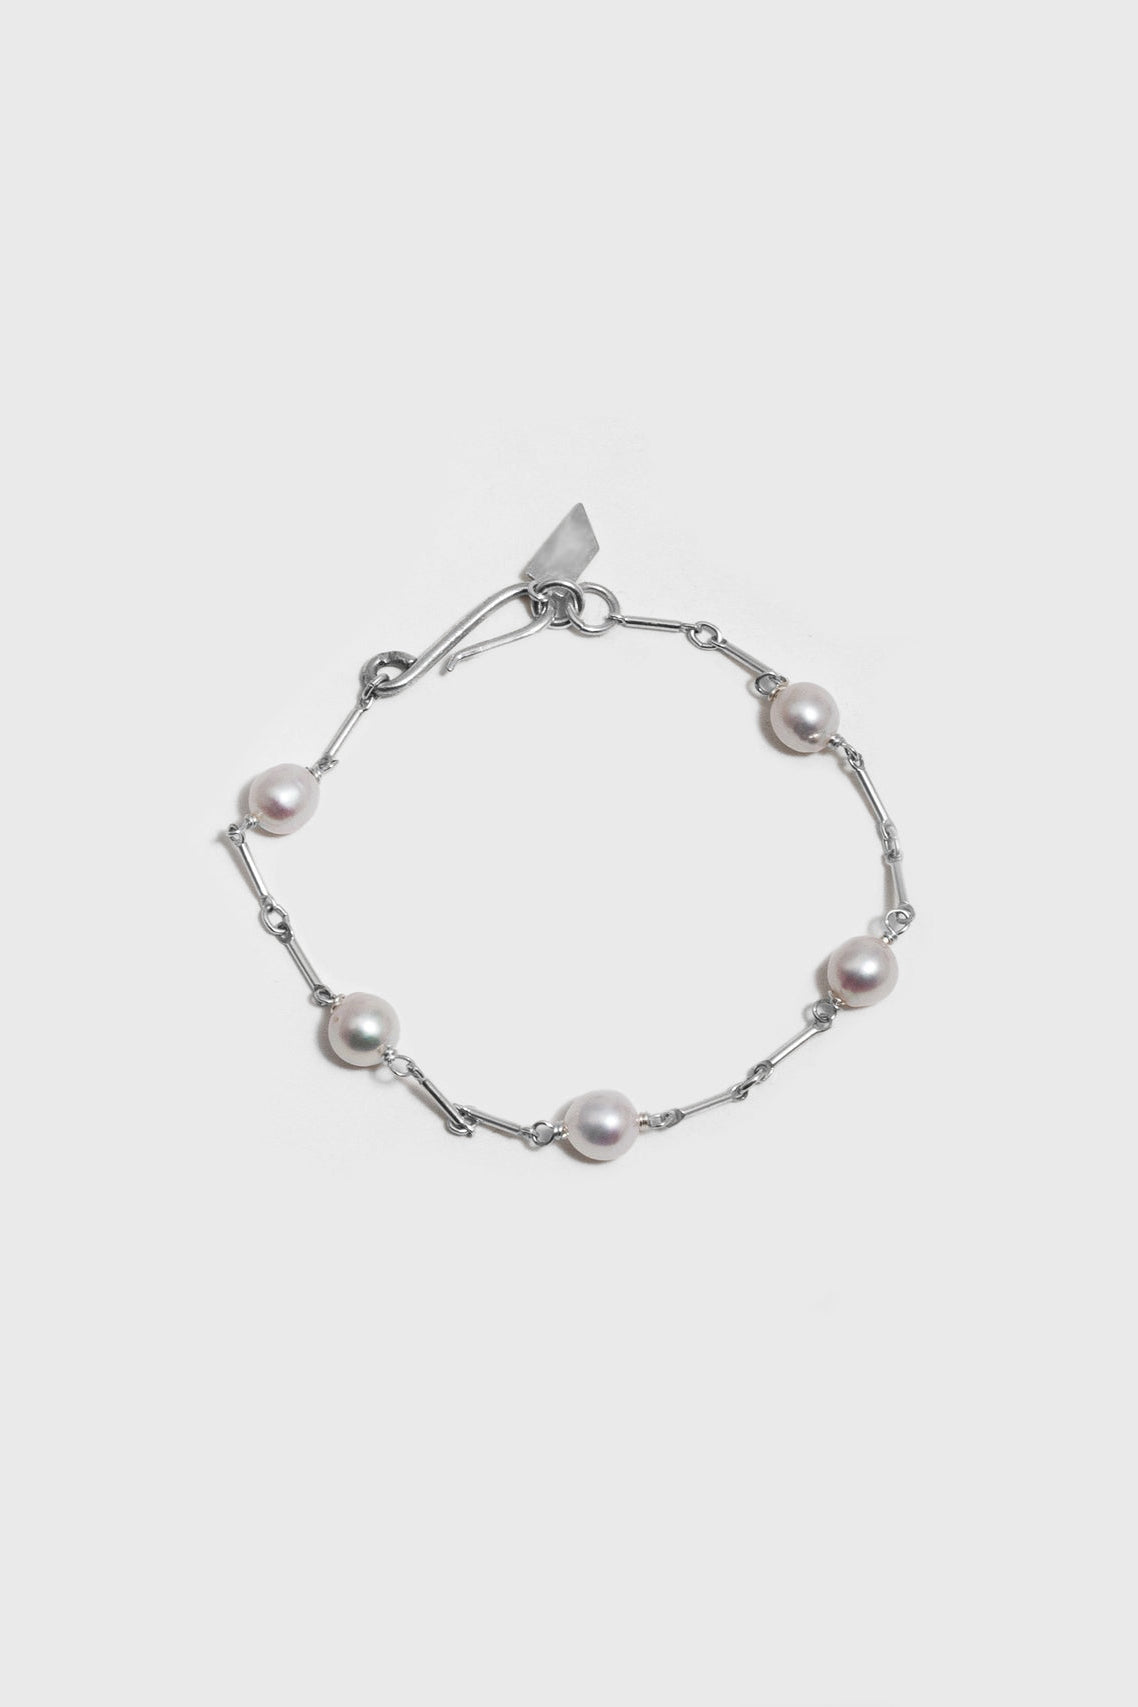 Pearl Link Bracelet in Sterling Silver by Loren Stewart